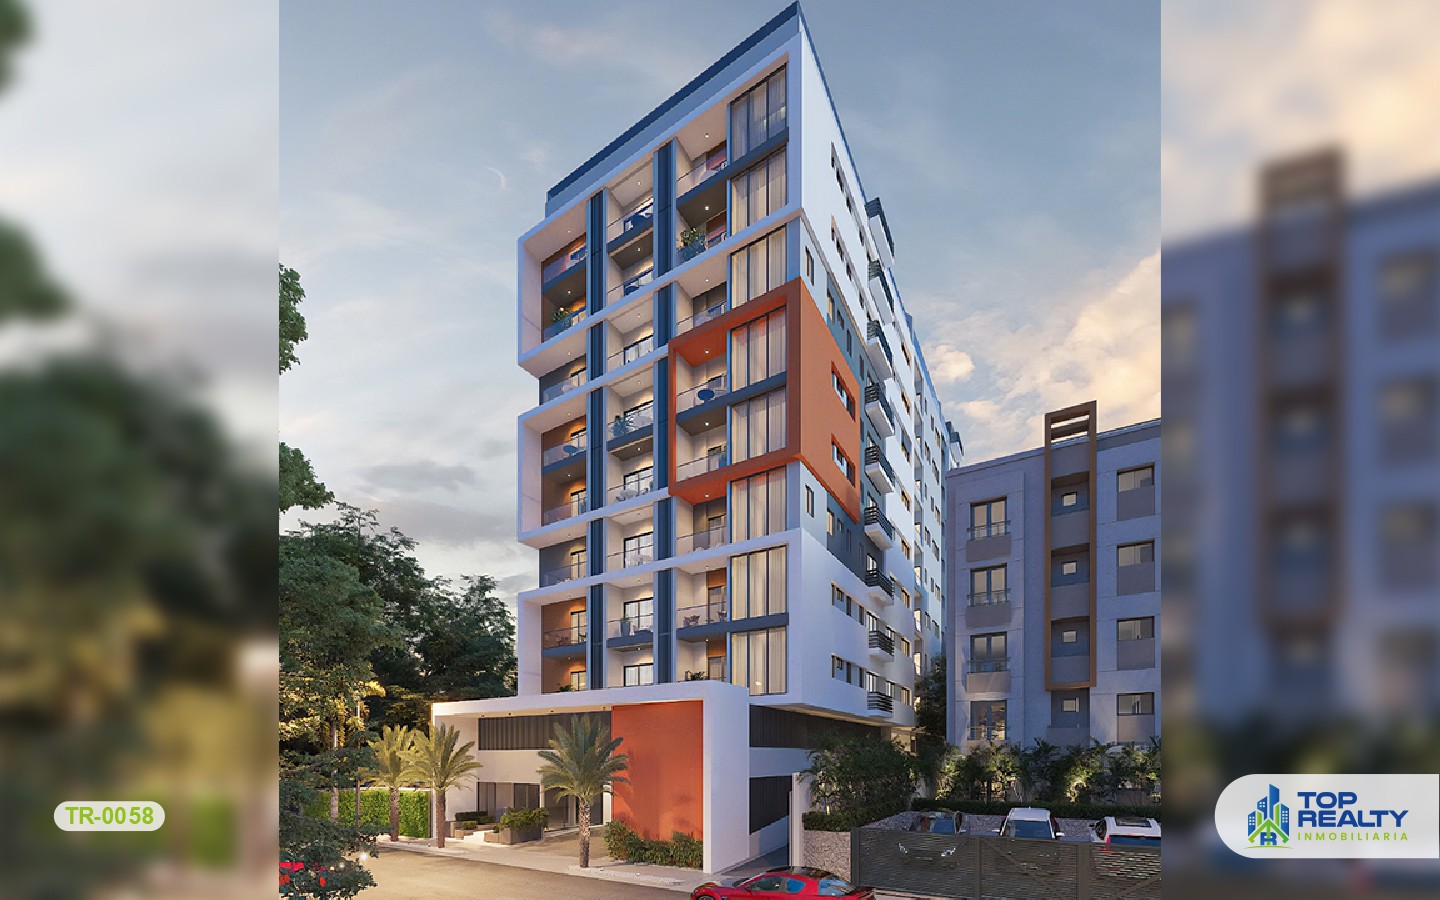 apartamentos - TR-0058:  Proyecto con 2 bloques independientes, uso familiar y Airbnb friendly. 2